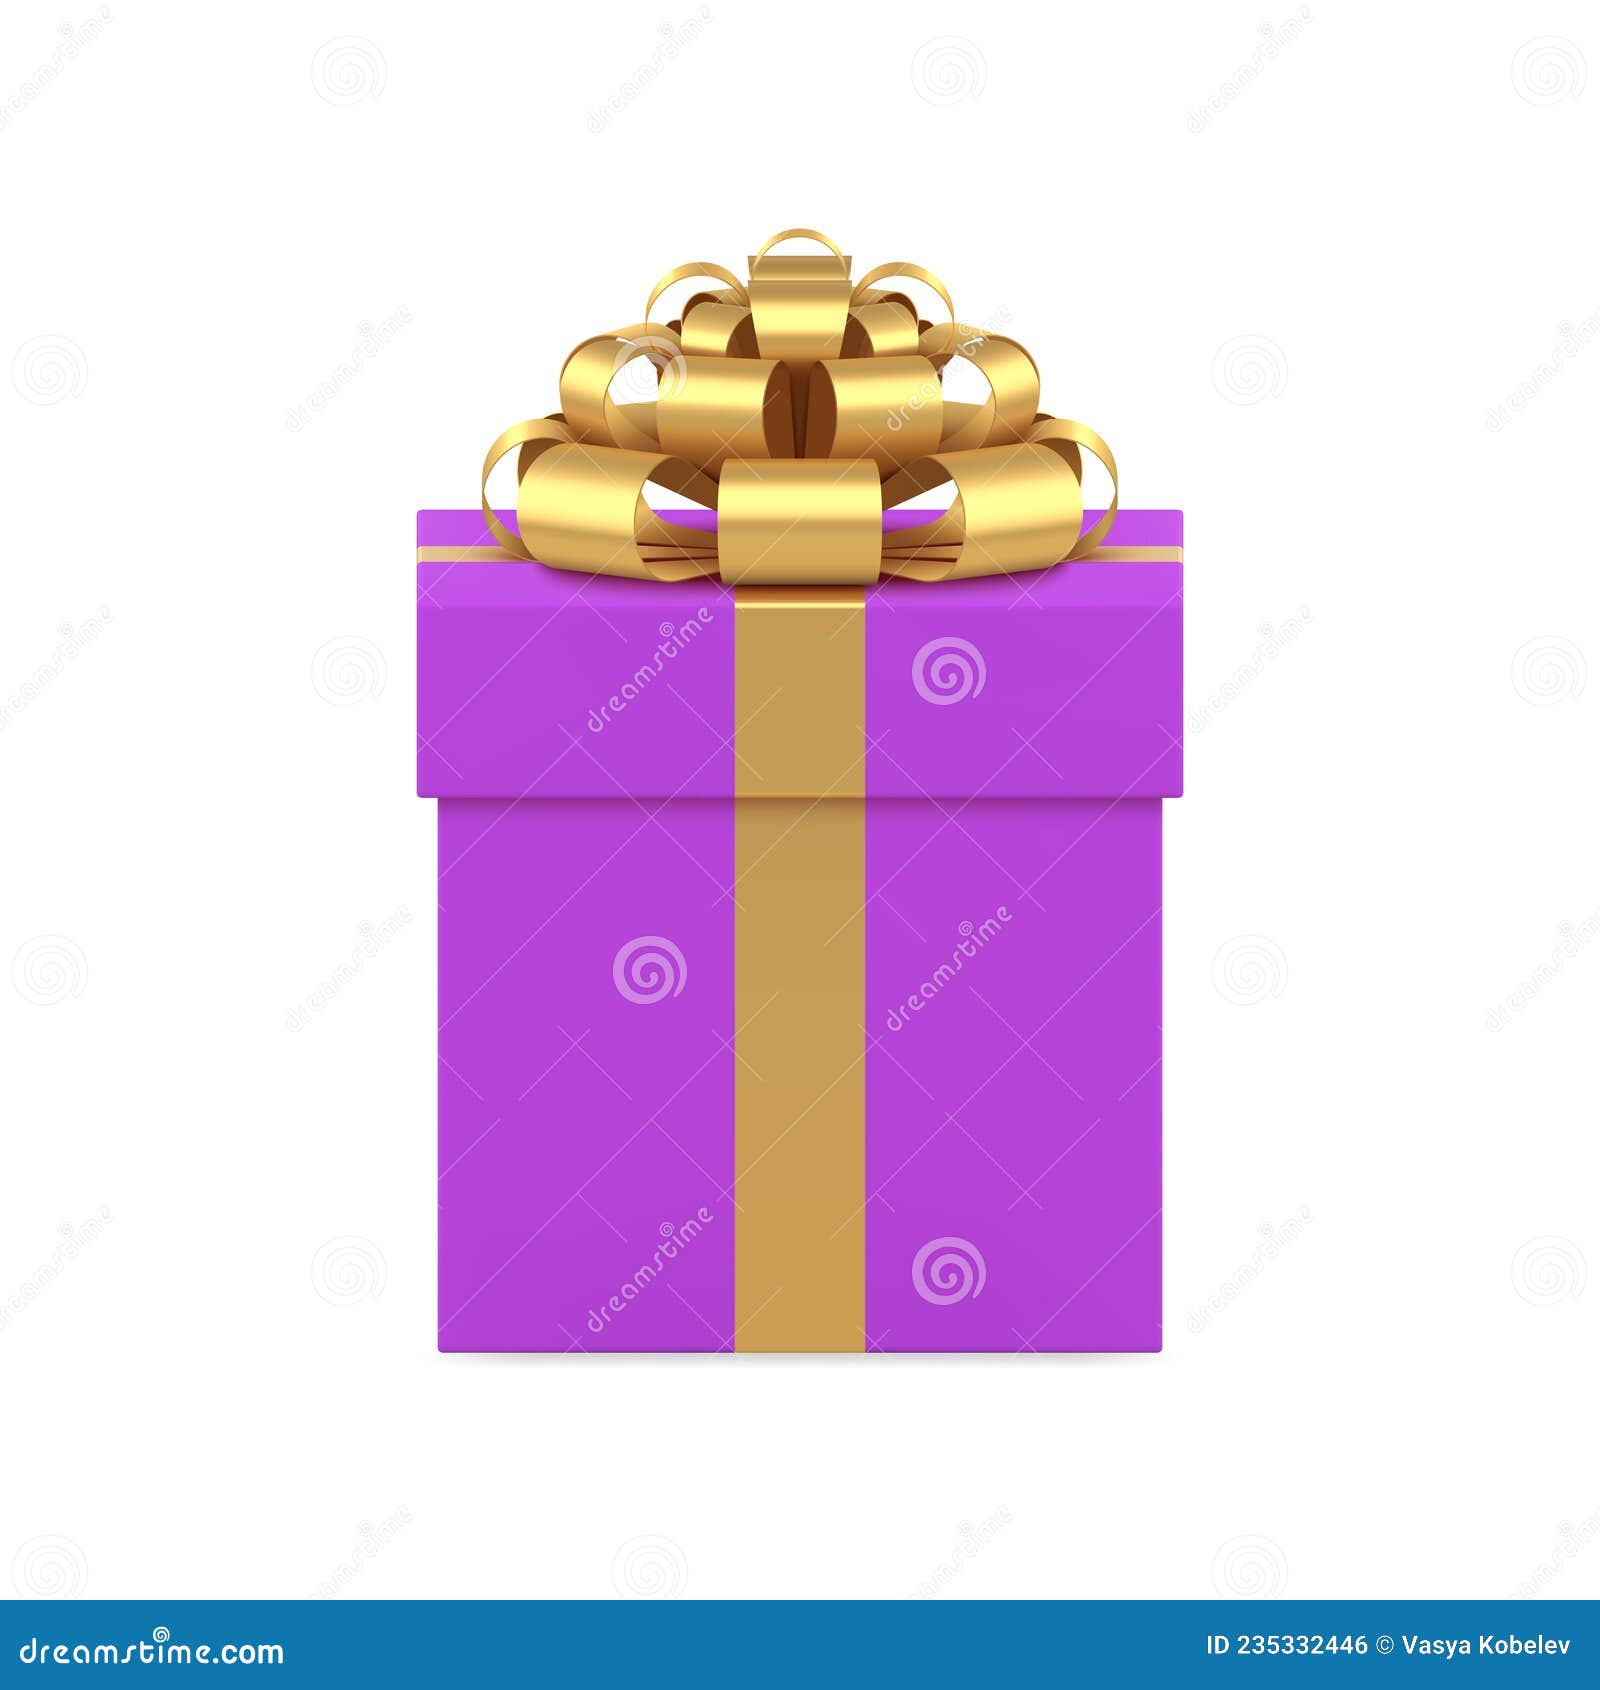 Bạn đang tìm kiếm một chiếc hộp quà đáng yêu cho ngày nghỉ của mình? Hãy cùng thưởng thức hộp quà bọc giấy cánh tím tinh tế và đầy màu sắc này. Một món quà tuyệt vời cho người thân của bạn.